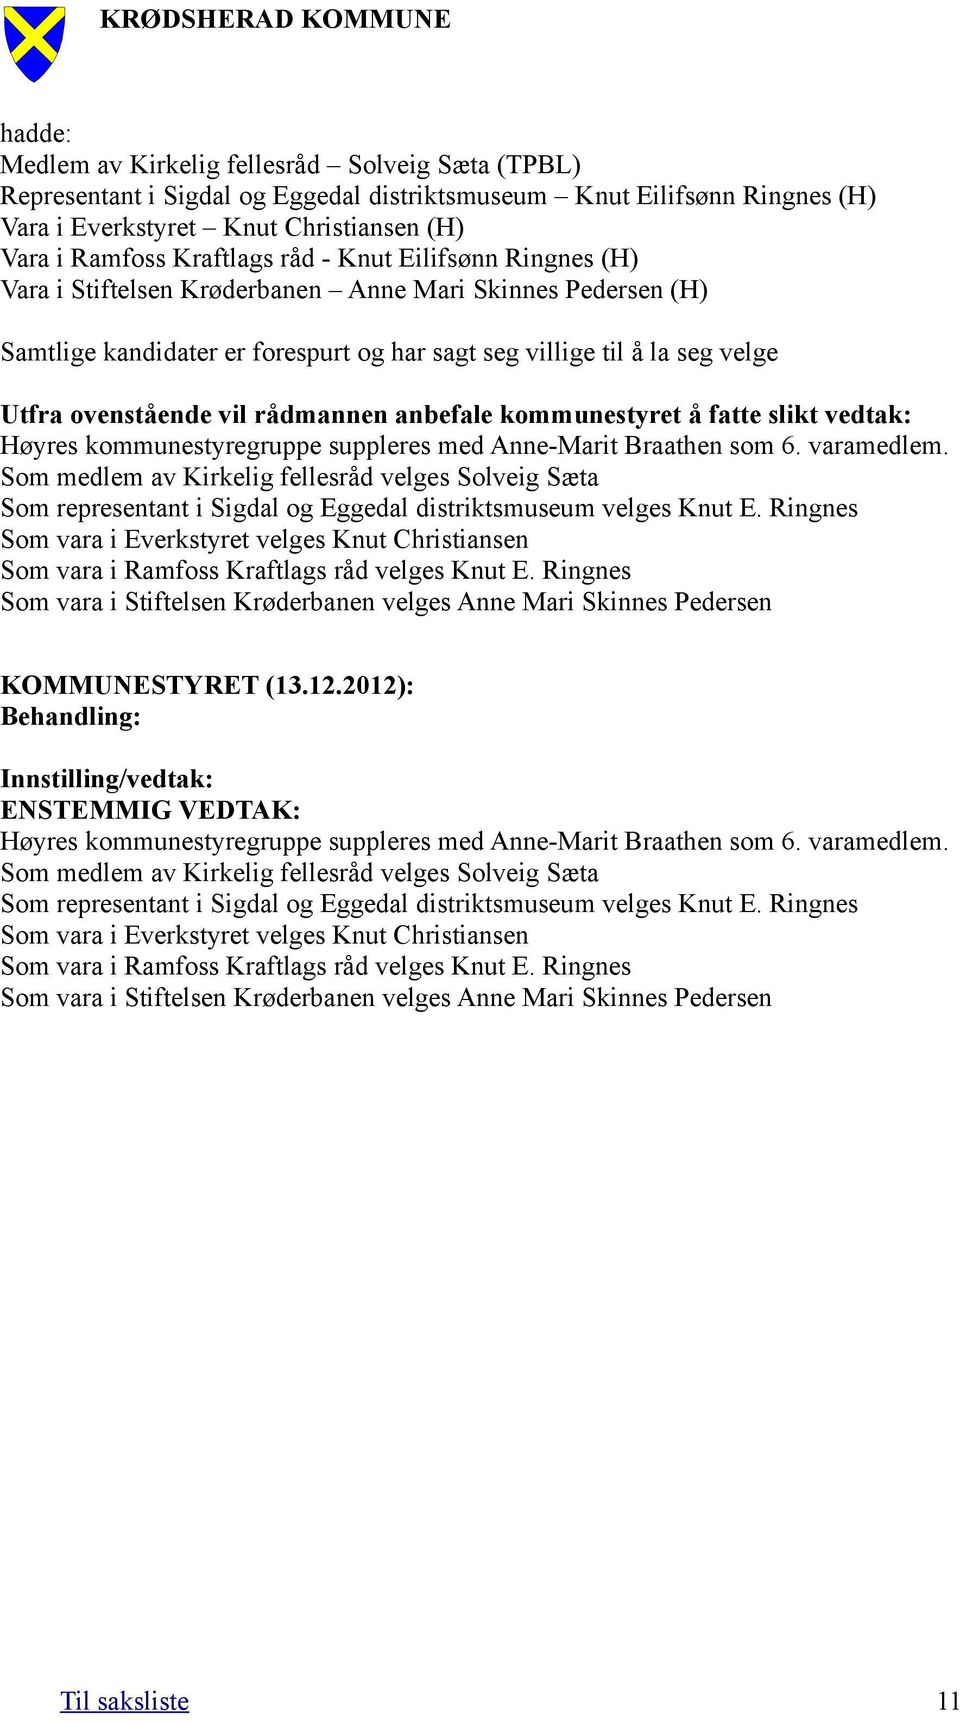 rådmannen anbefale kommunestyret å fatte slikt vedtak: Høyres kommunestyregruppe suppleres med Anne-Marit Braathen som 6. varamedlem.